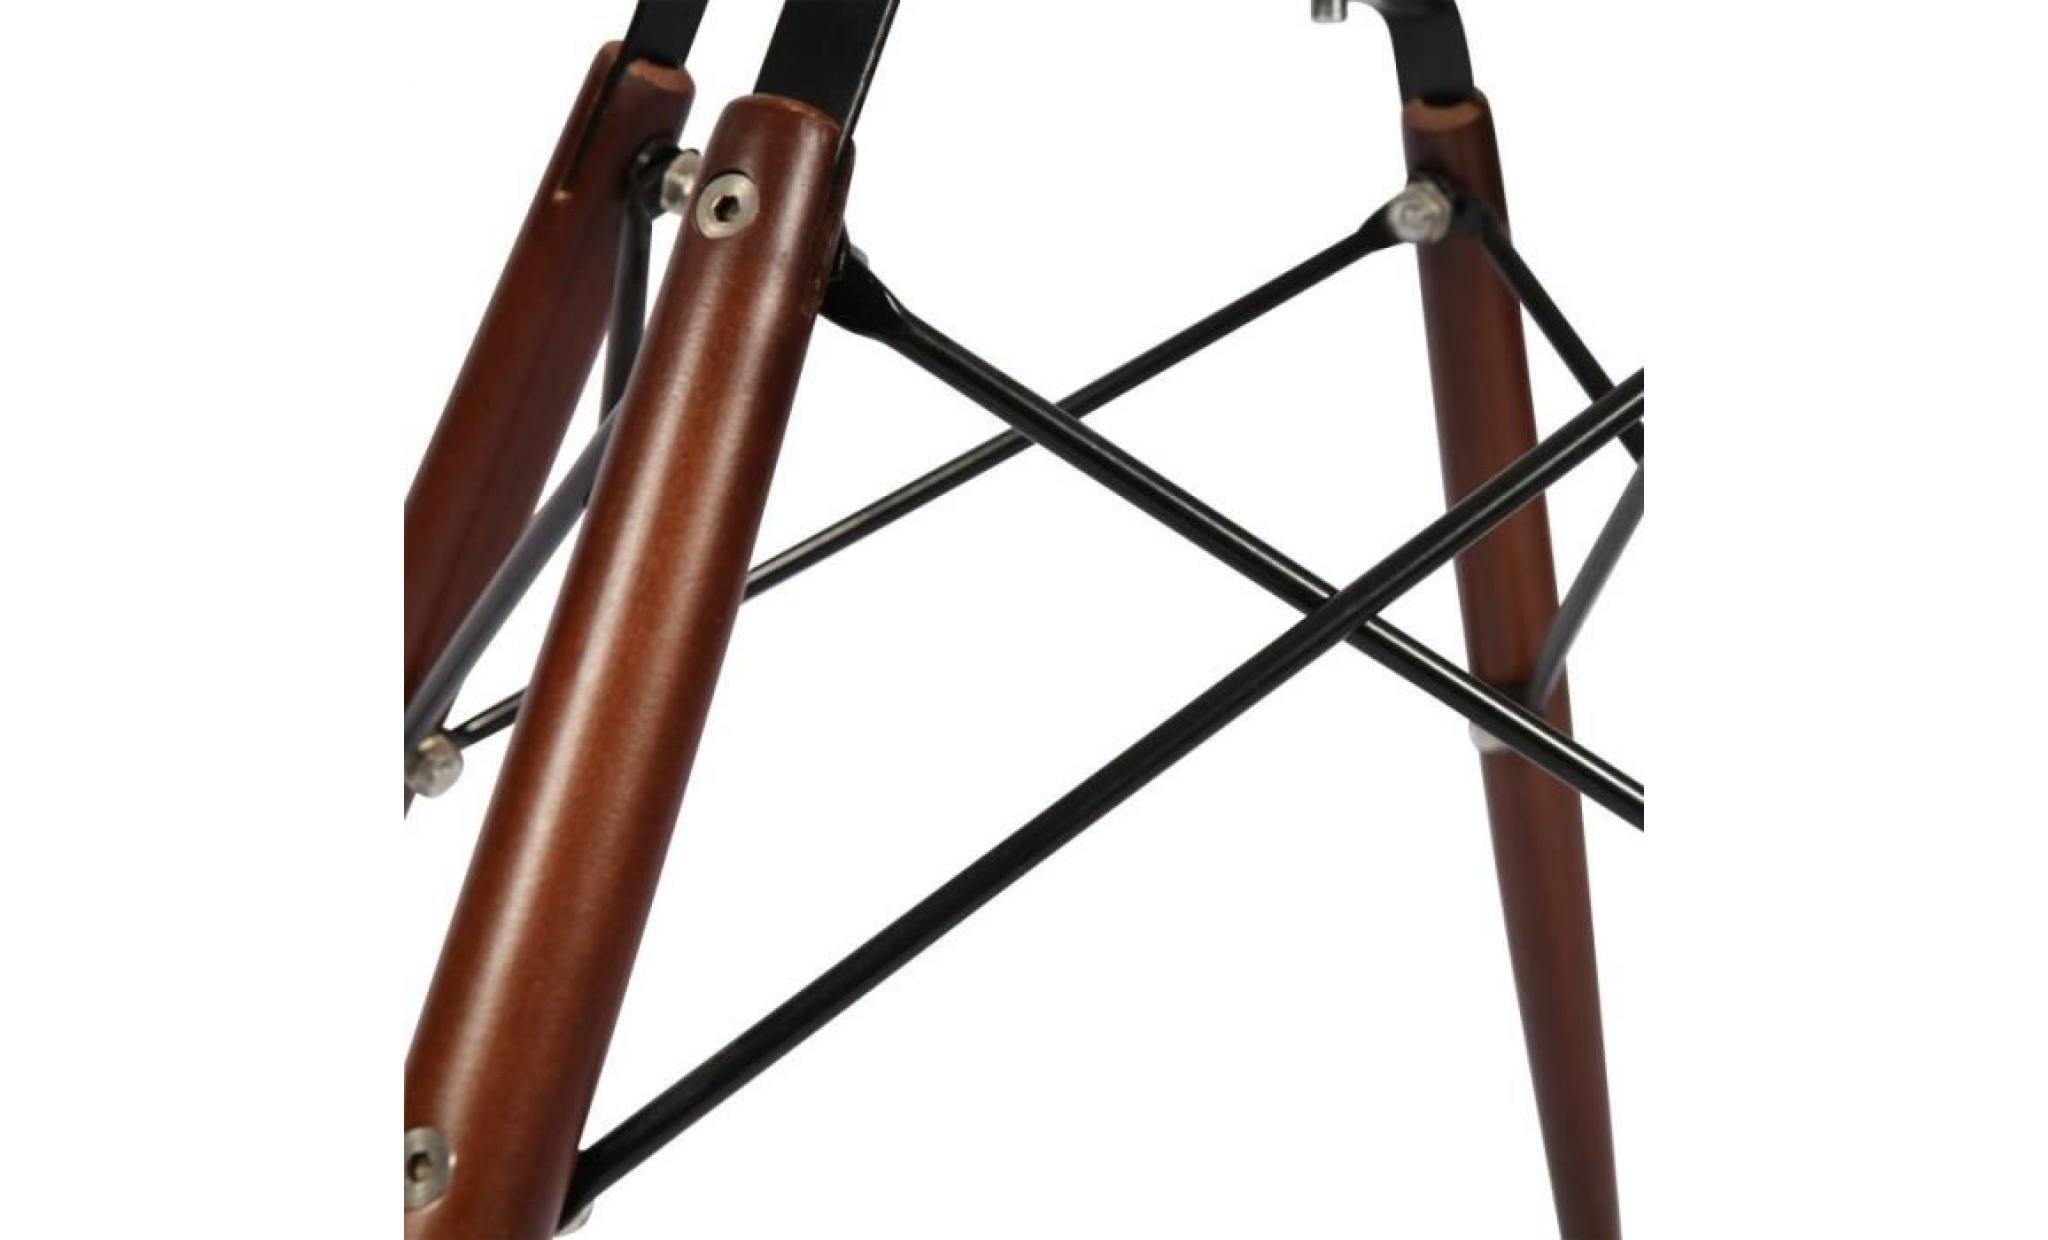 1 x fauteuil design retro style charles eames daw hauteur 48cm pieds en bois naturel vert kaki mobistyl® pas cher